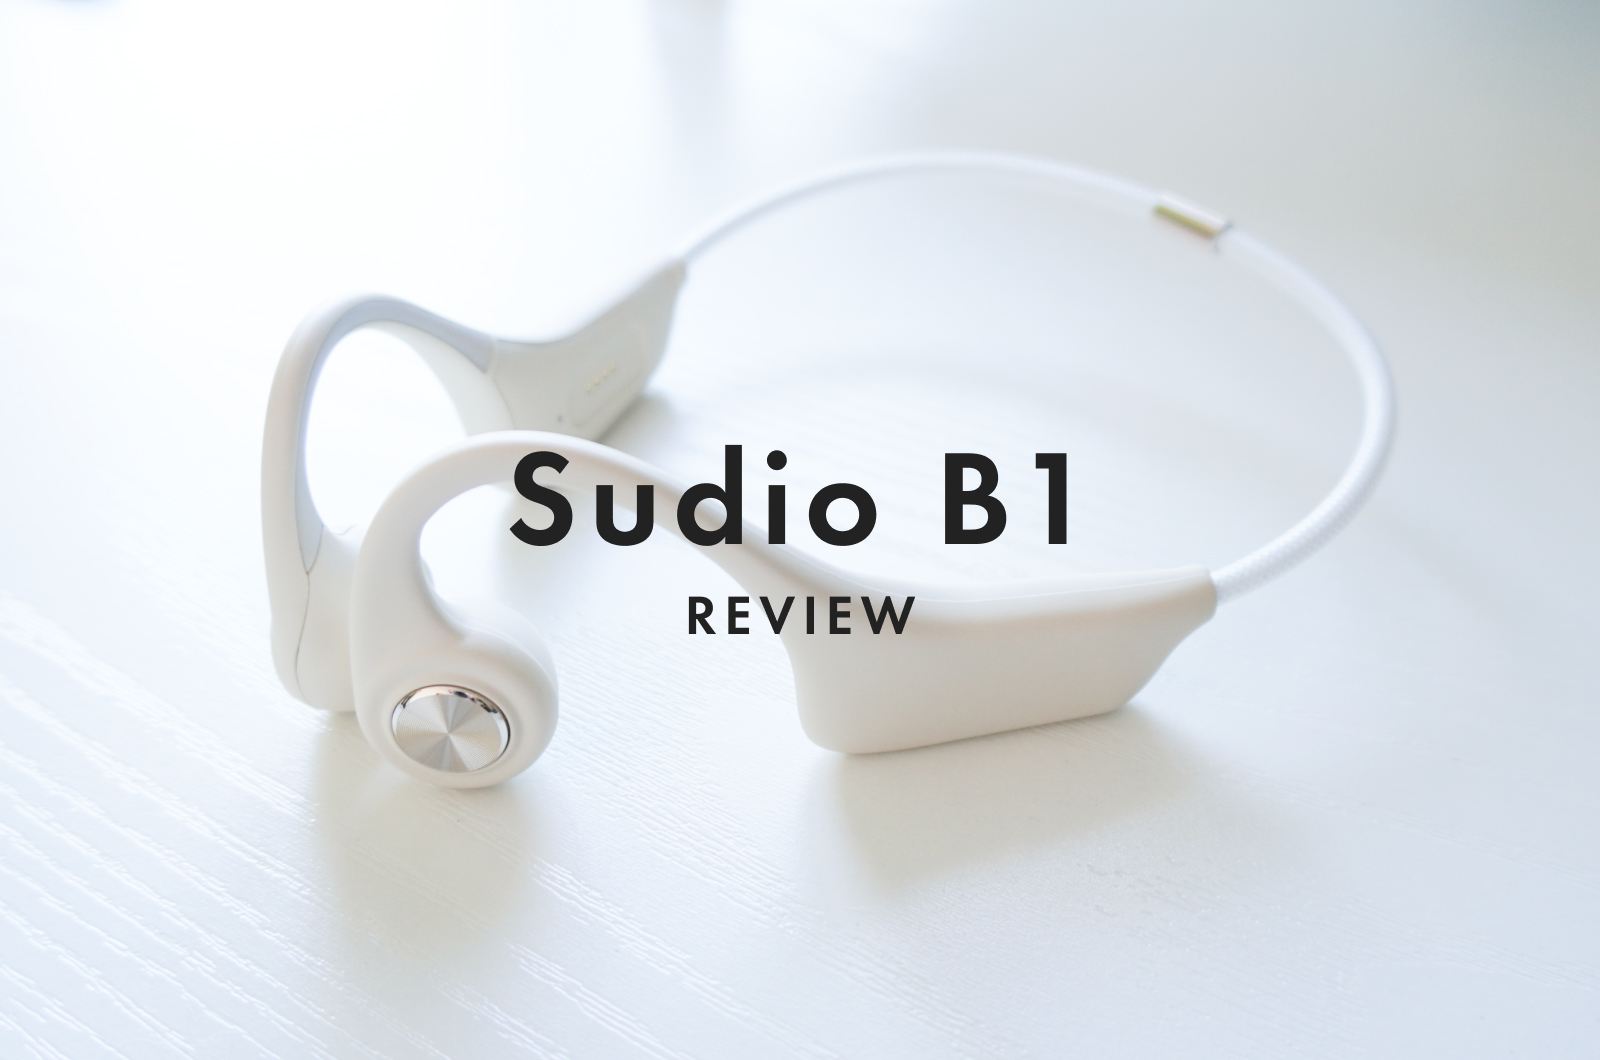 Sudio B1 Review